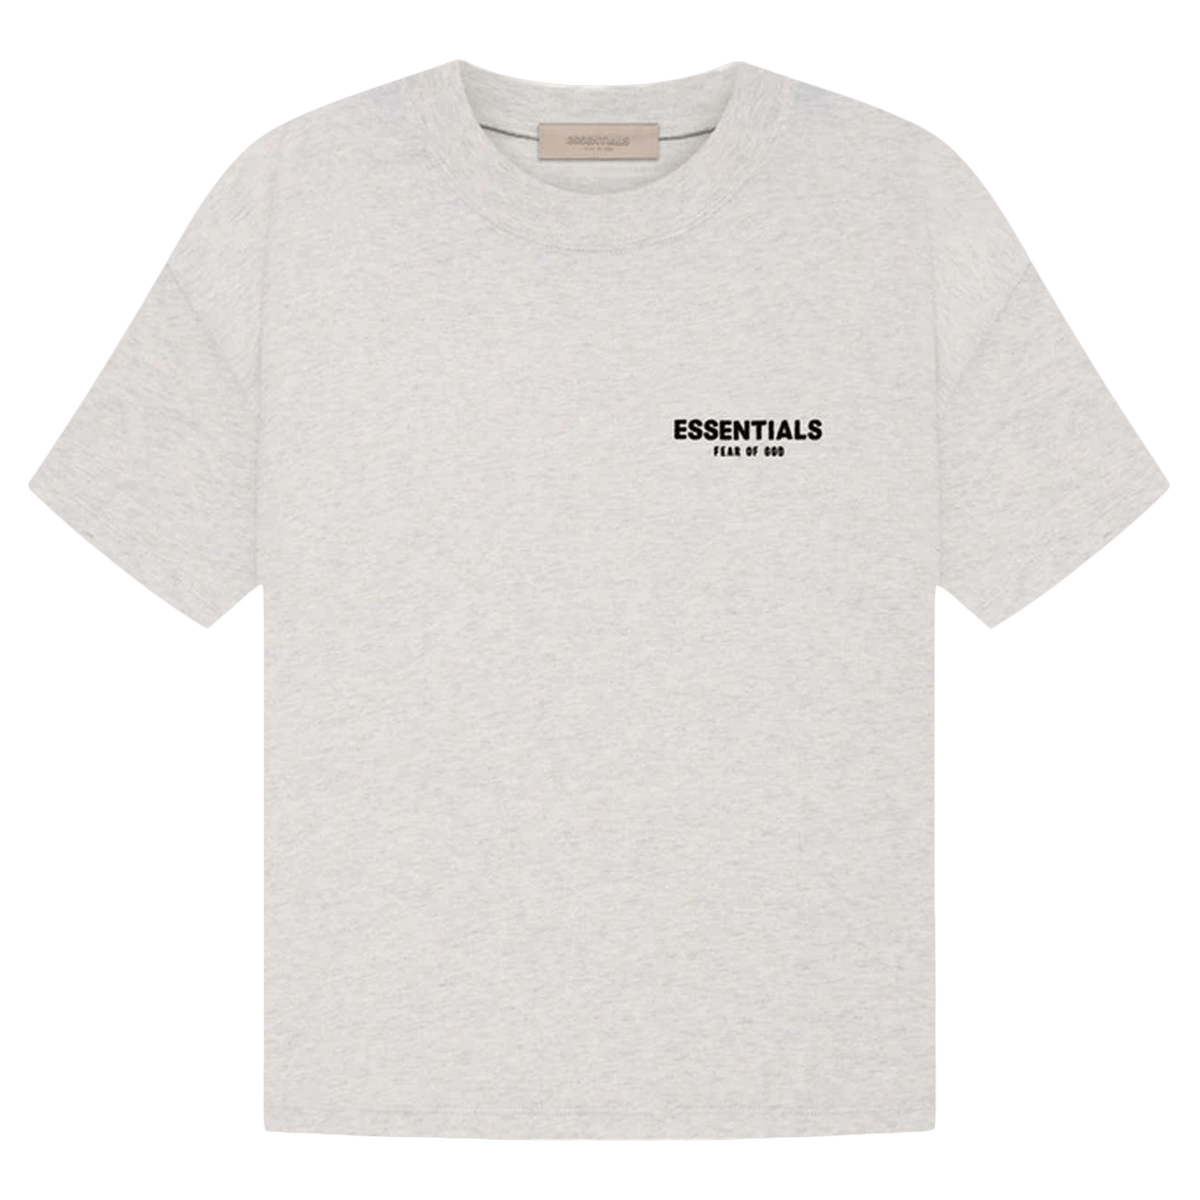 Fear of God Essentials T-shirt 'Light Oatmeal' - Kick Game